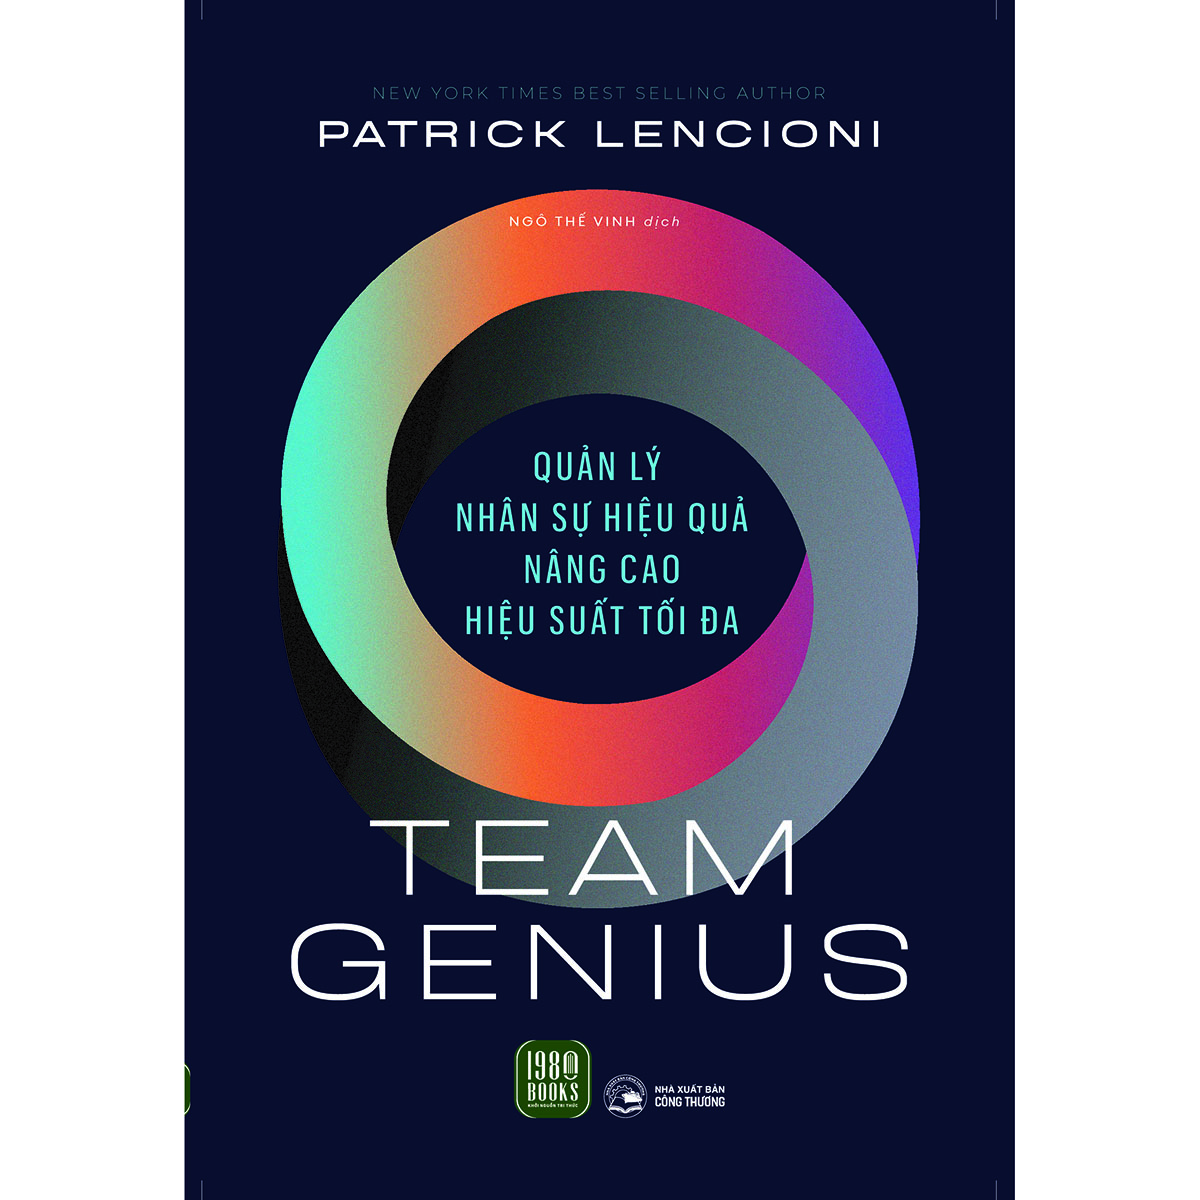 Team Genius - Quản lý nhân sự hiệu quả, nâng cao hiệu suất tối đa